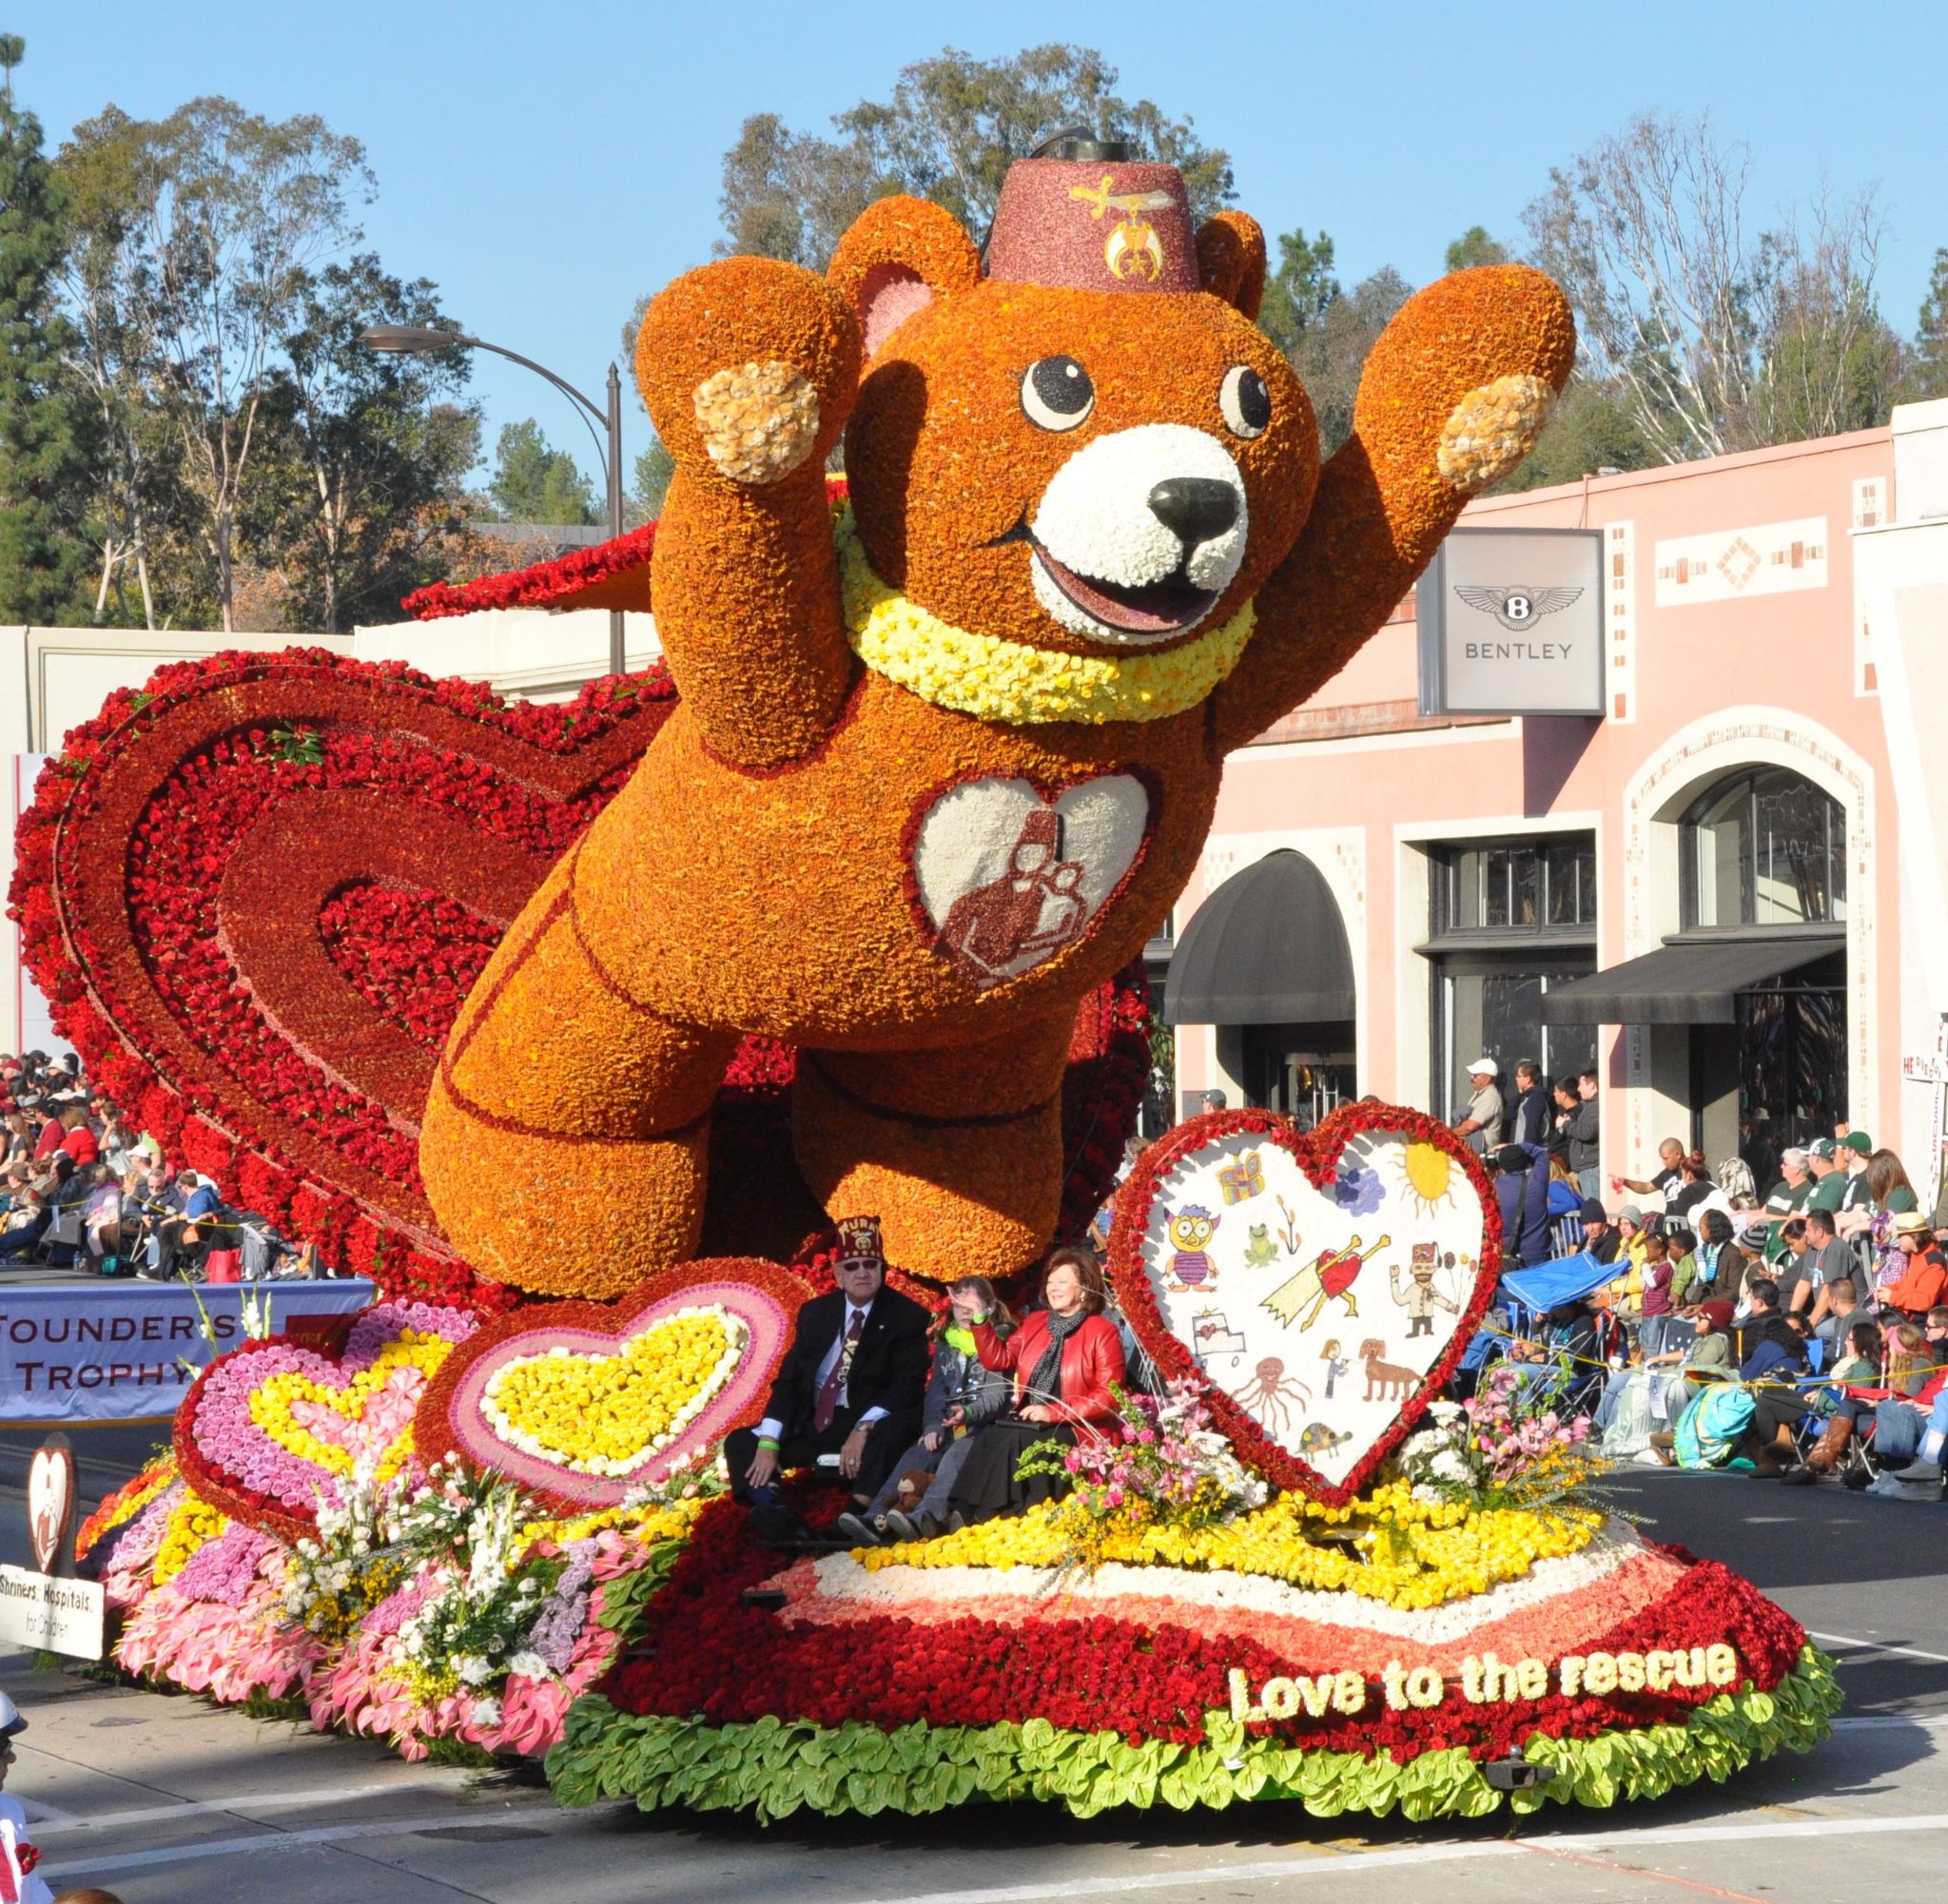 Shriner's Hospital for Children (a), Tournament of Roses Parade, Pasadena, CA - 2014-01-01